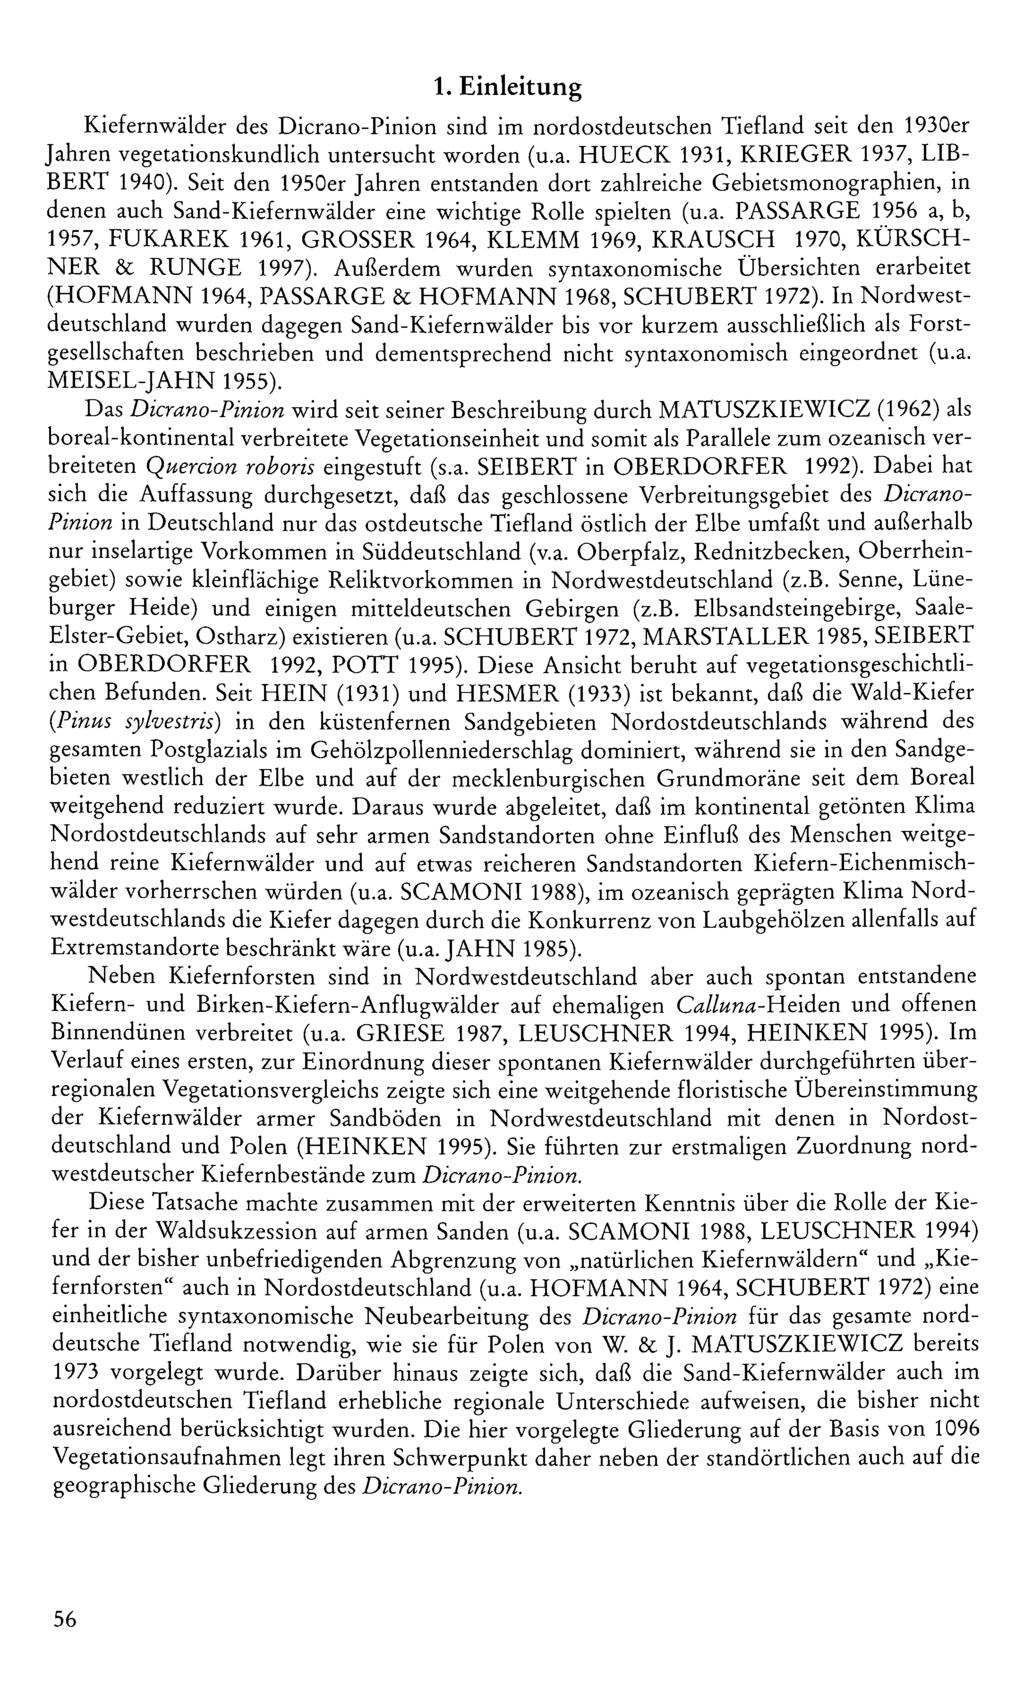 1. Einleitung Kiefernwälder des Dicrano-Pinion sind im nordostdeutschen Tiefland seit den 1930er Jahren vegetationskundlich untersucht worden (u.a. HUECK 1931, KRIEGER 1937, LIB- BERT 1940).